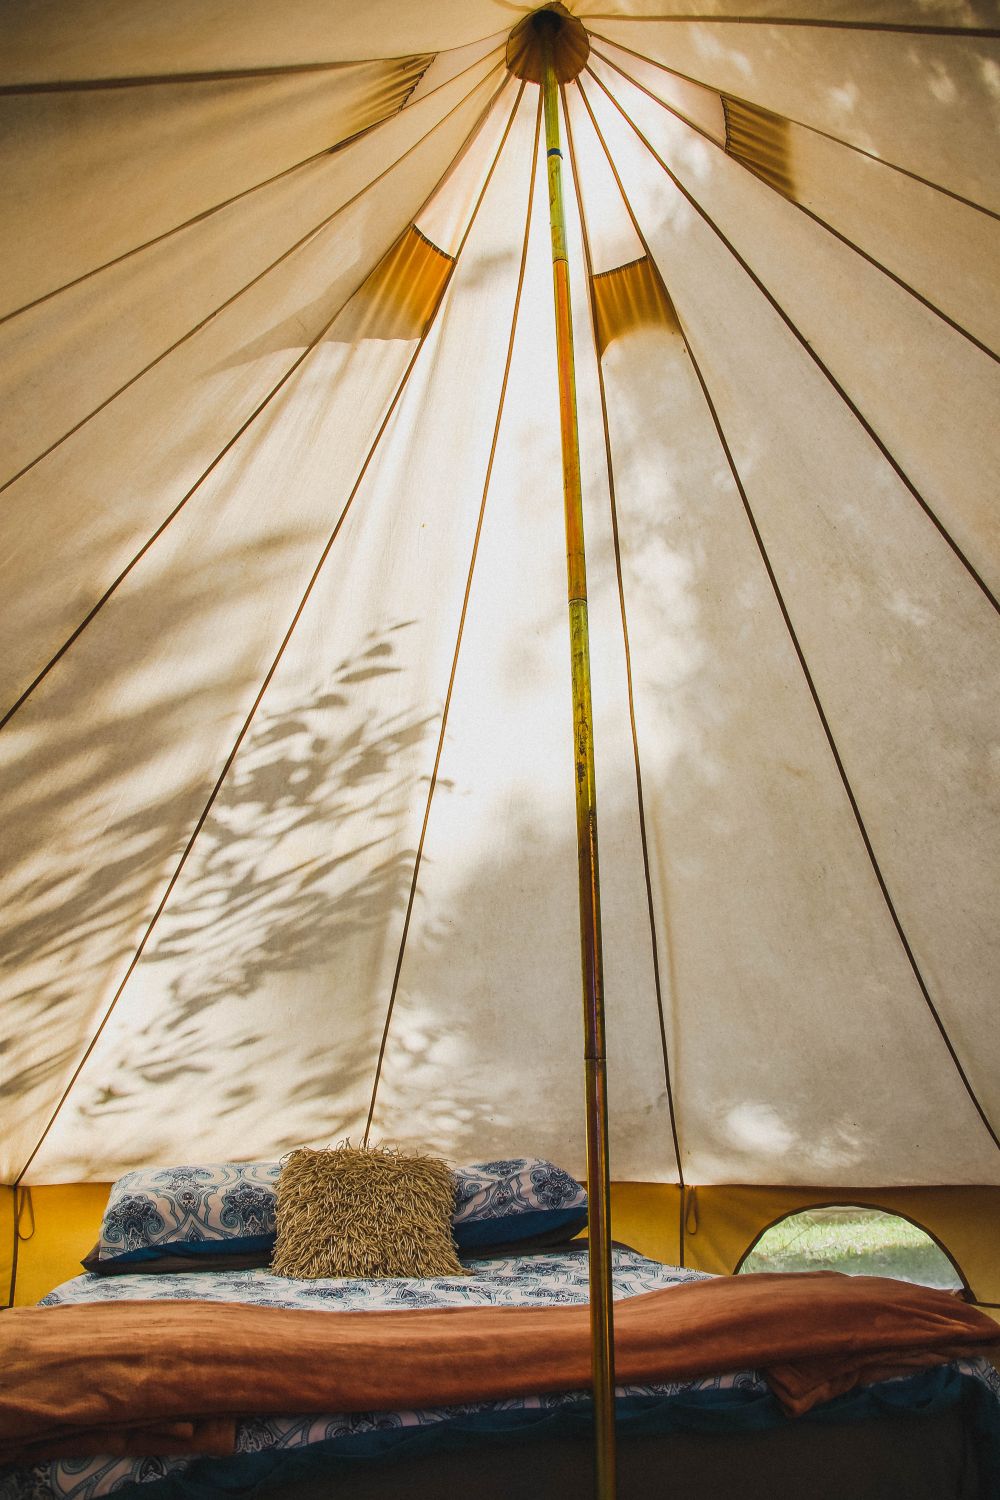 Behandl dit telt som dit ejet, når du benytter dig af teltudlejning